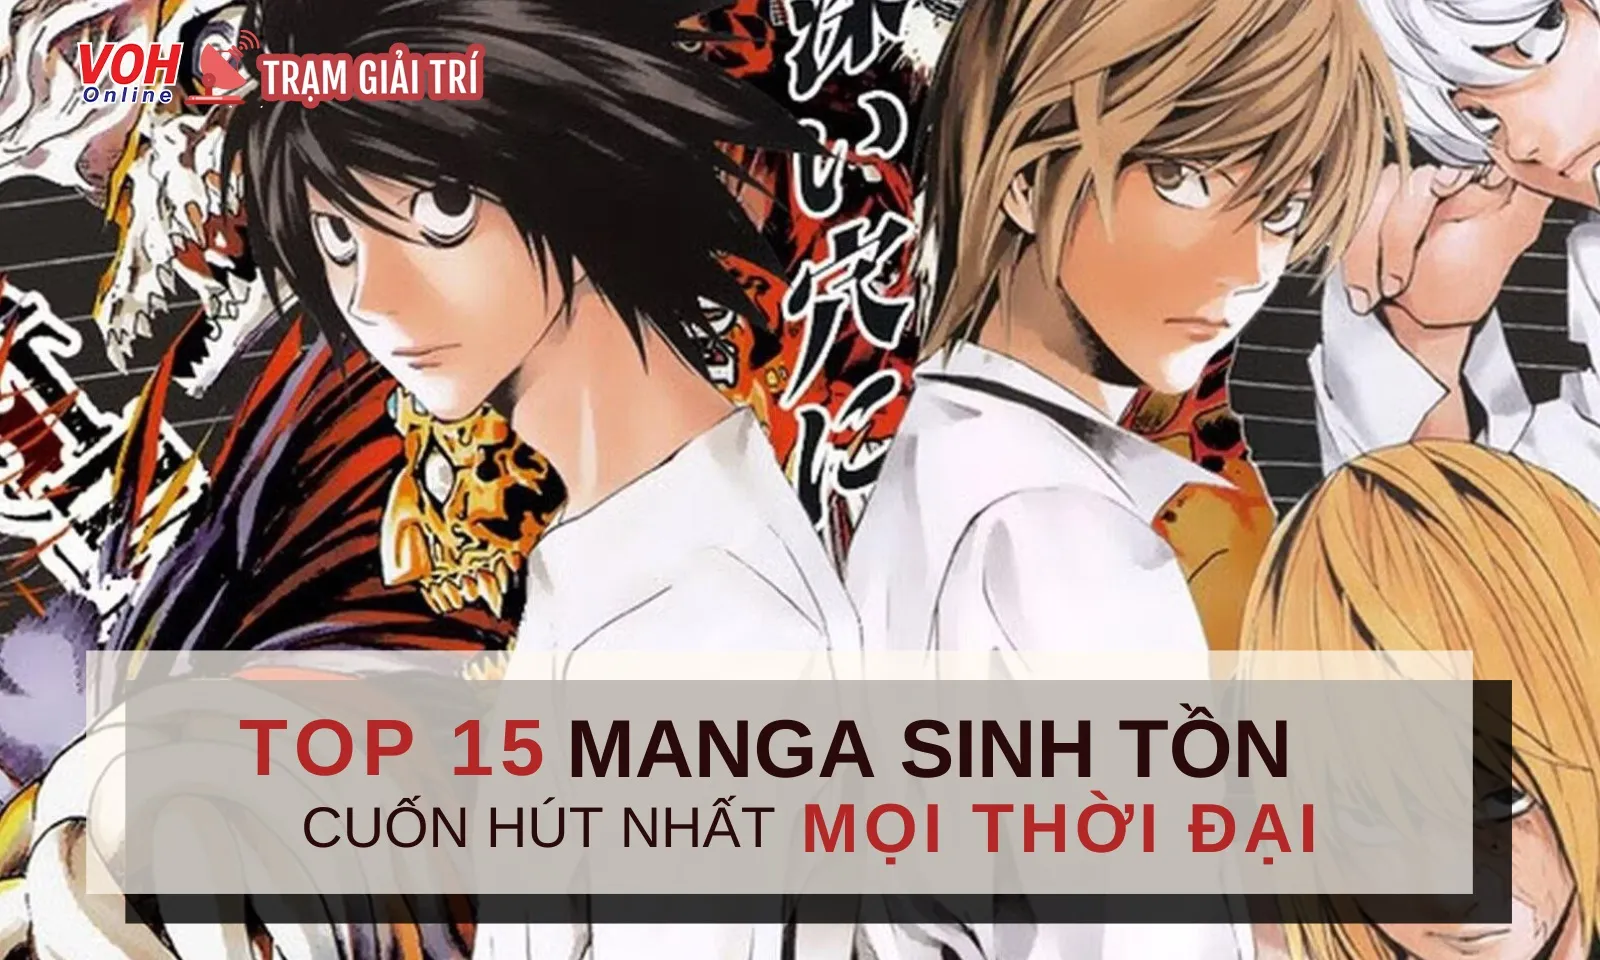 Top 15 manga sinh tồn cuốn hút nhất mọi thời đại